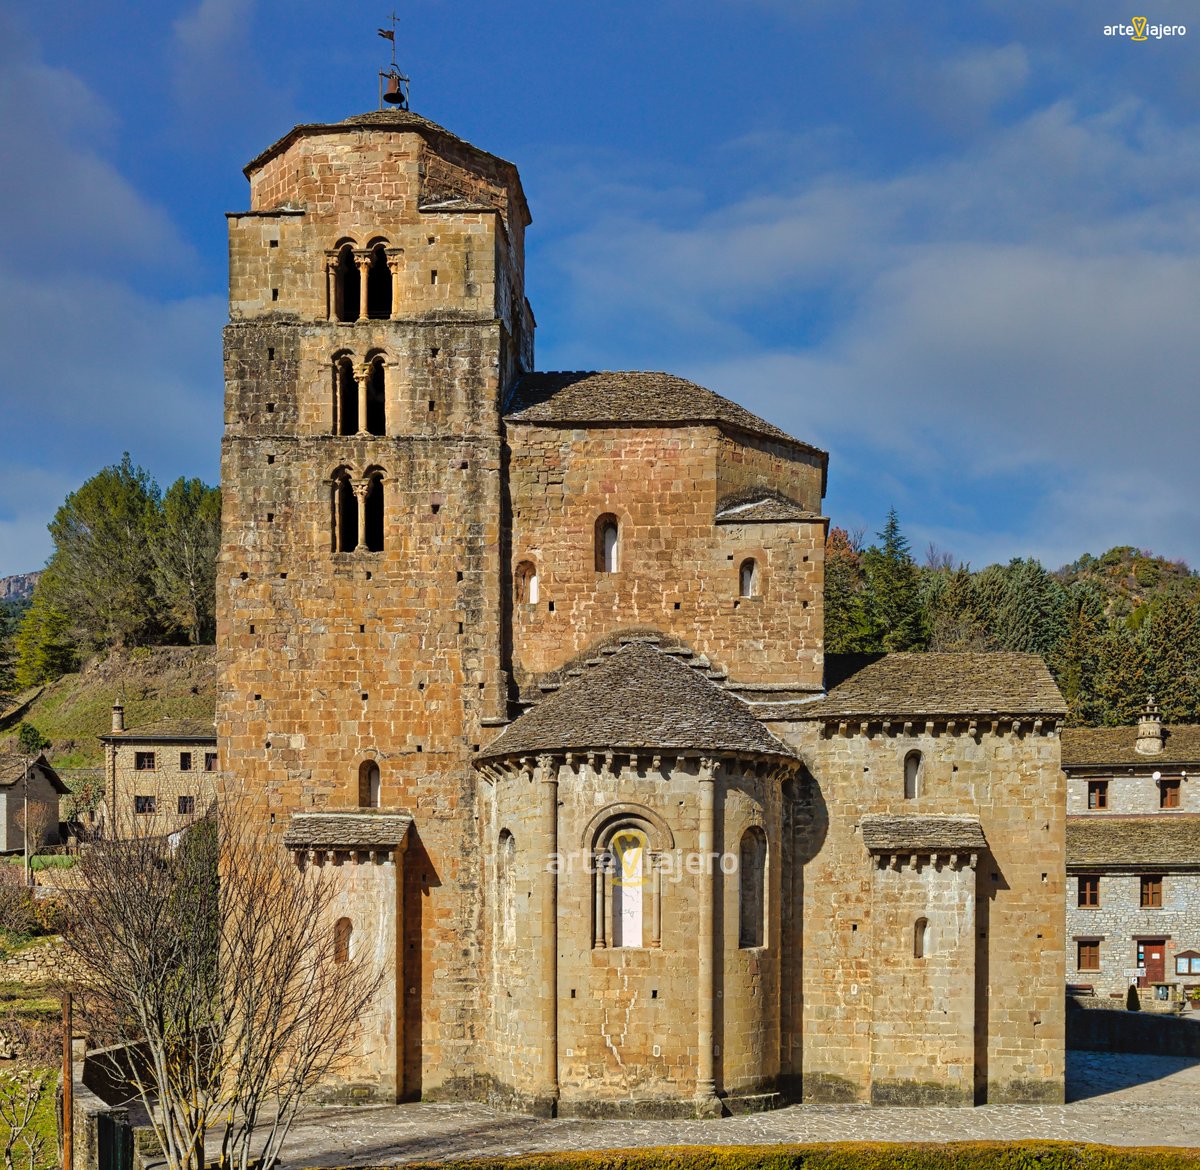 Iglesia de Santa María de Santa Cruz de la Serós (S. XI, Huesca). Considerada como uno de los ejemplos más antiguos y bellos del arte románico de Aragón #FelizViernes #photography #travel